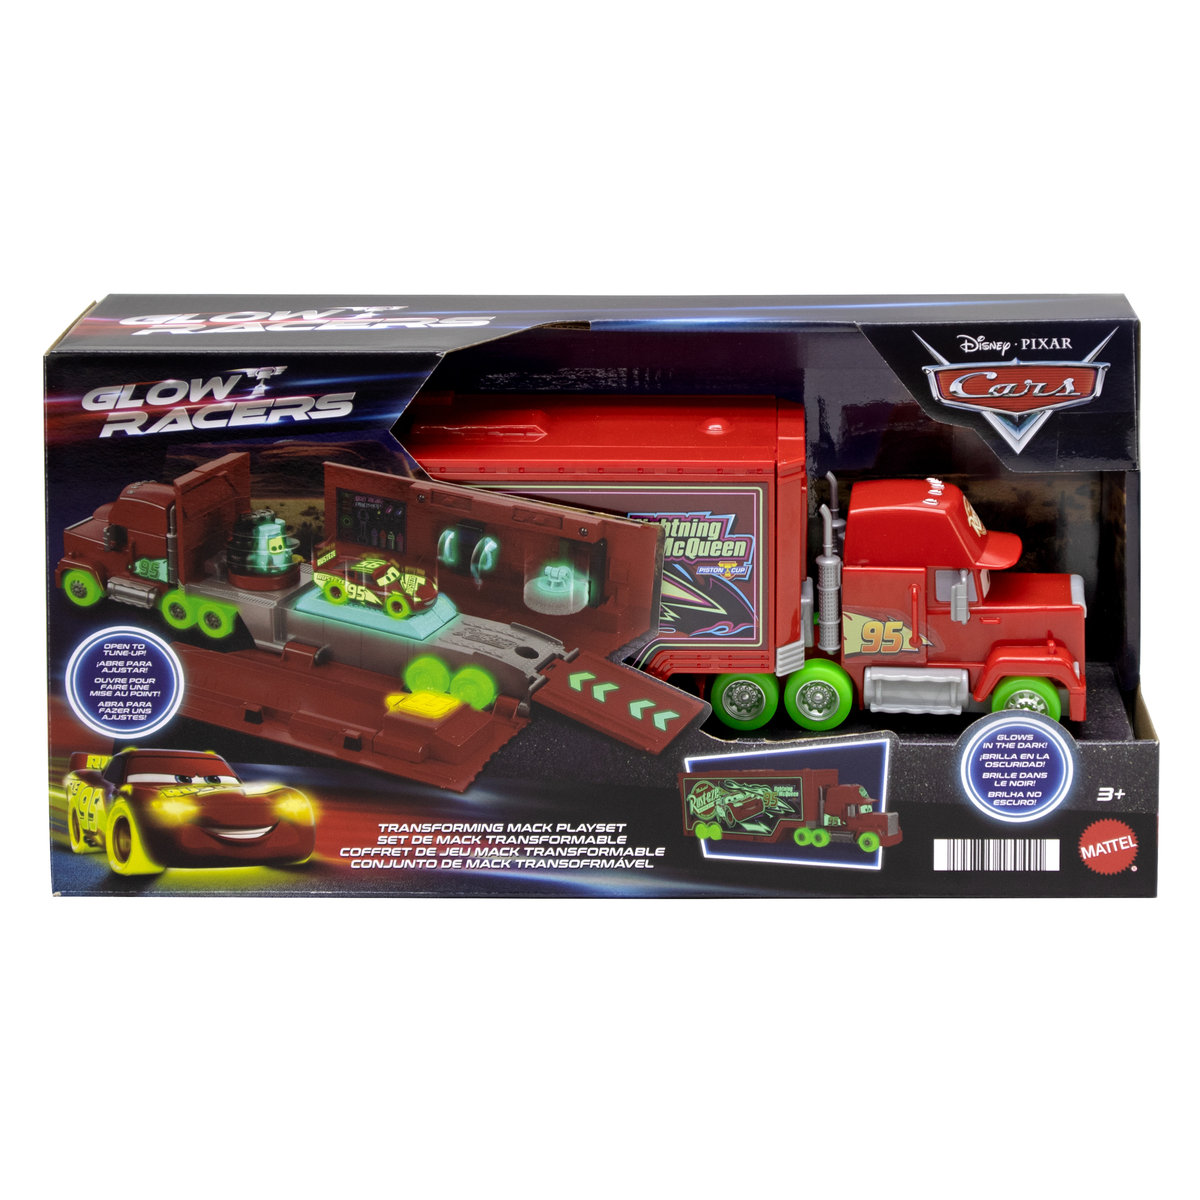 Auta Glow Racers, Maniek Świecący W Ciemnościach Zestaw, Hpx76